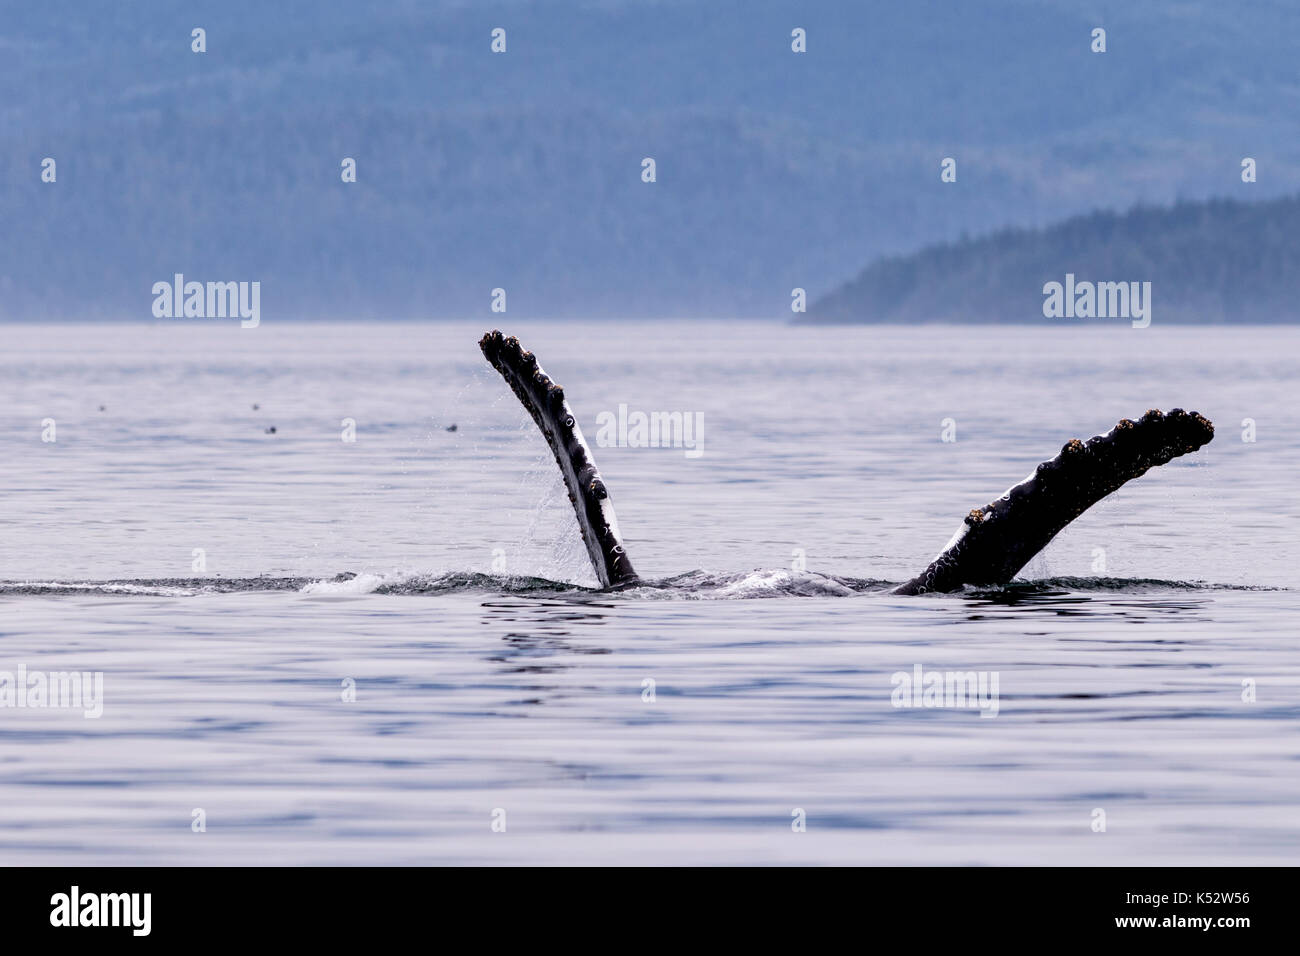 Baleine à bosse à l'arrière forme avec ses palmes, parc provincial marin de l'archipel de Broughton au large de l'île de Vancouver, Colombie-Britannique, Canada. Banque D'Images